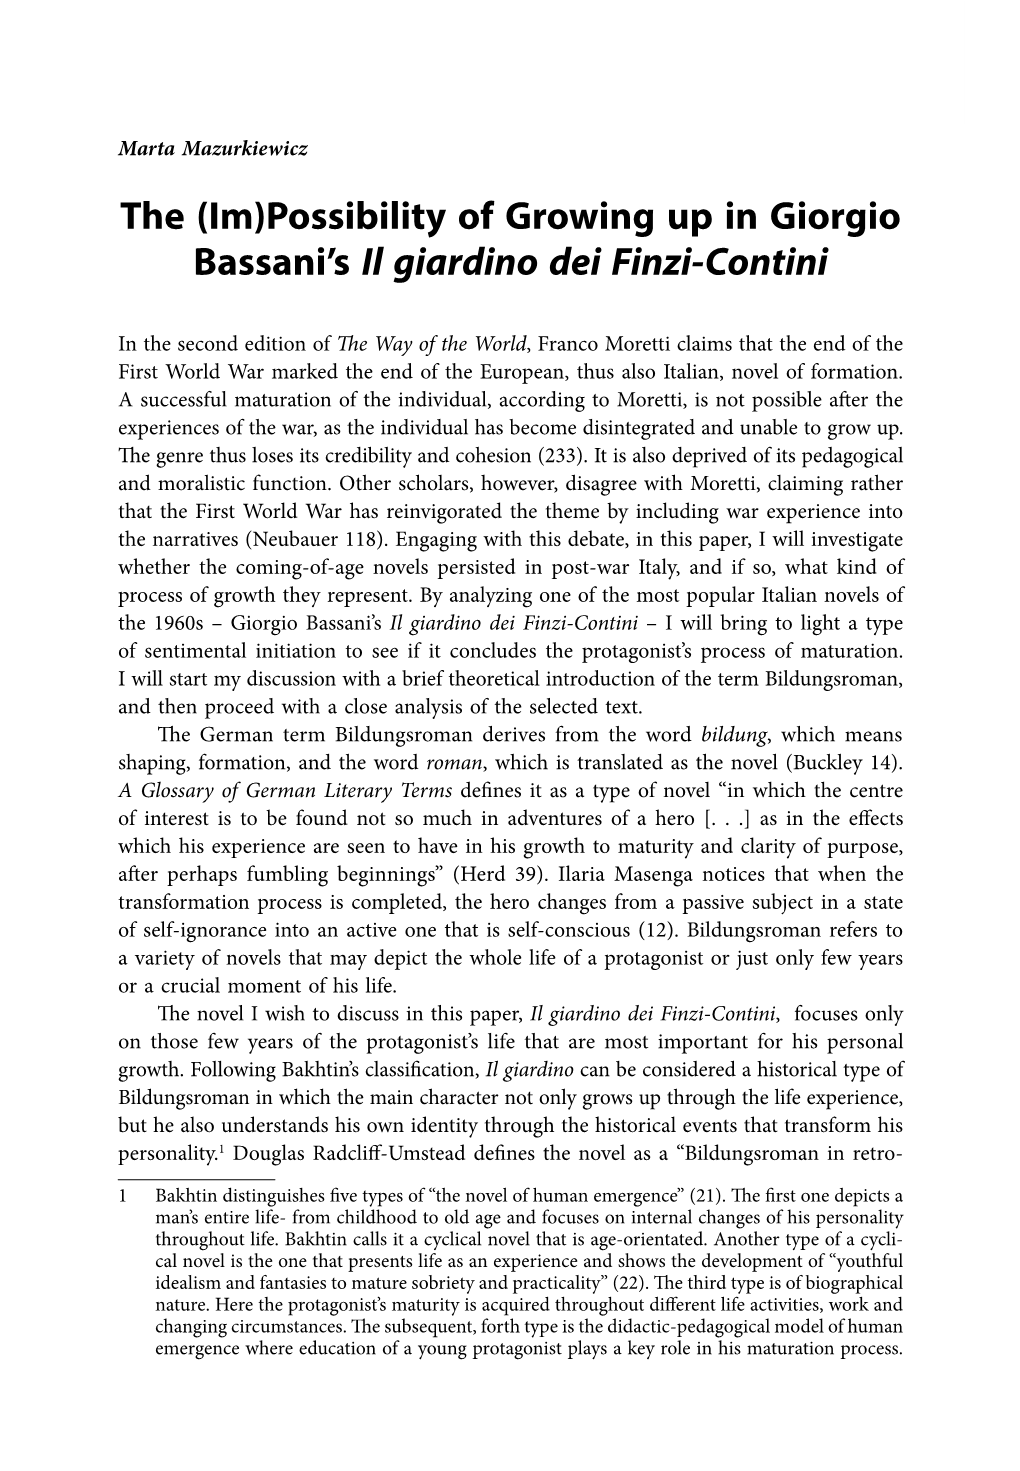 Possibility of Growing up in Giorgio Bassani's Il Giardino Dei